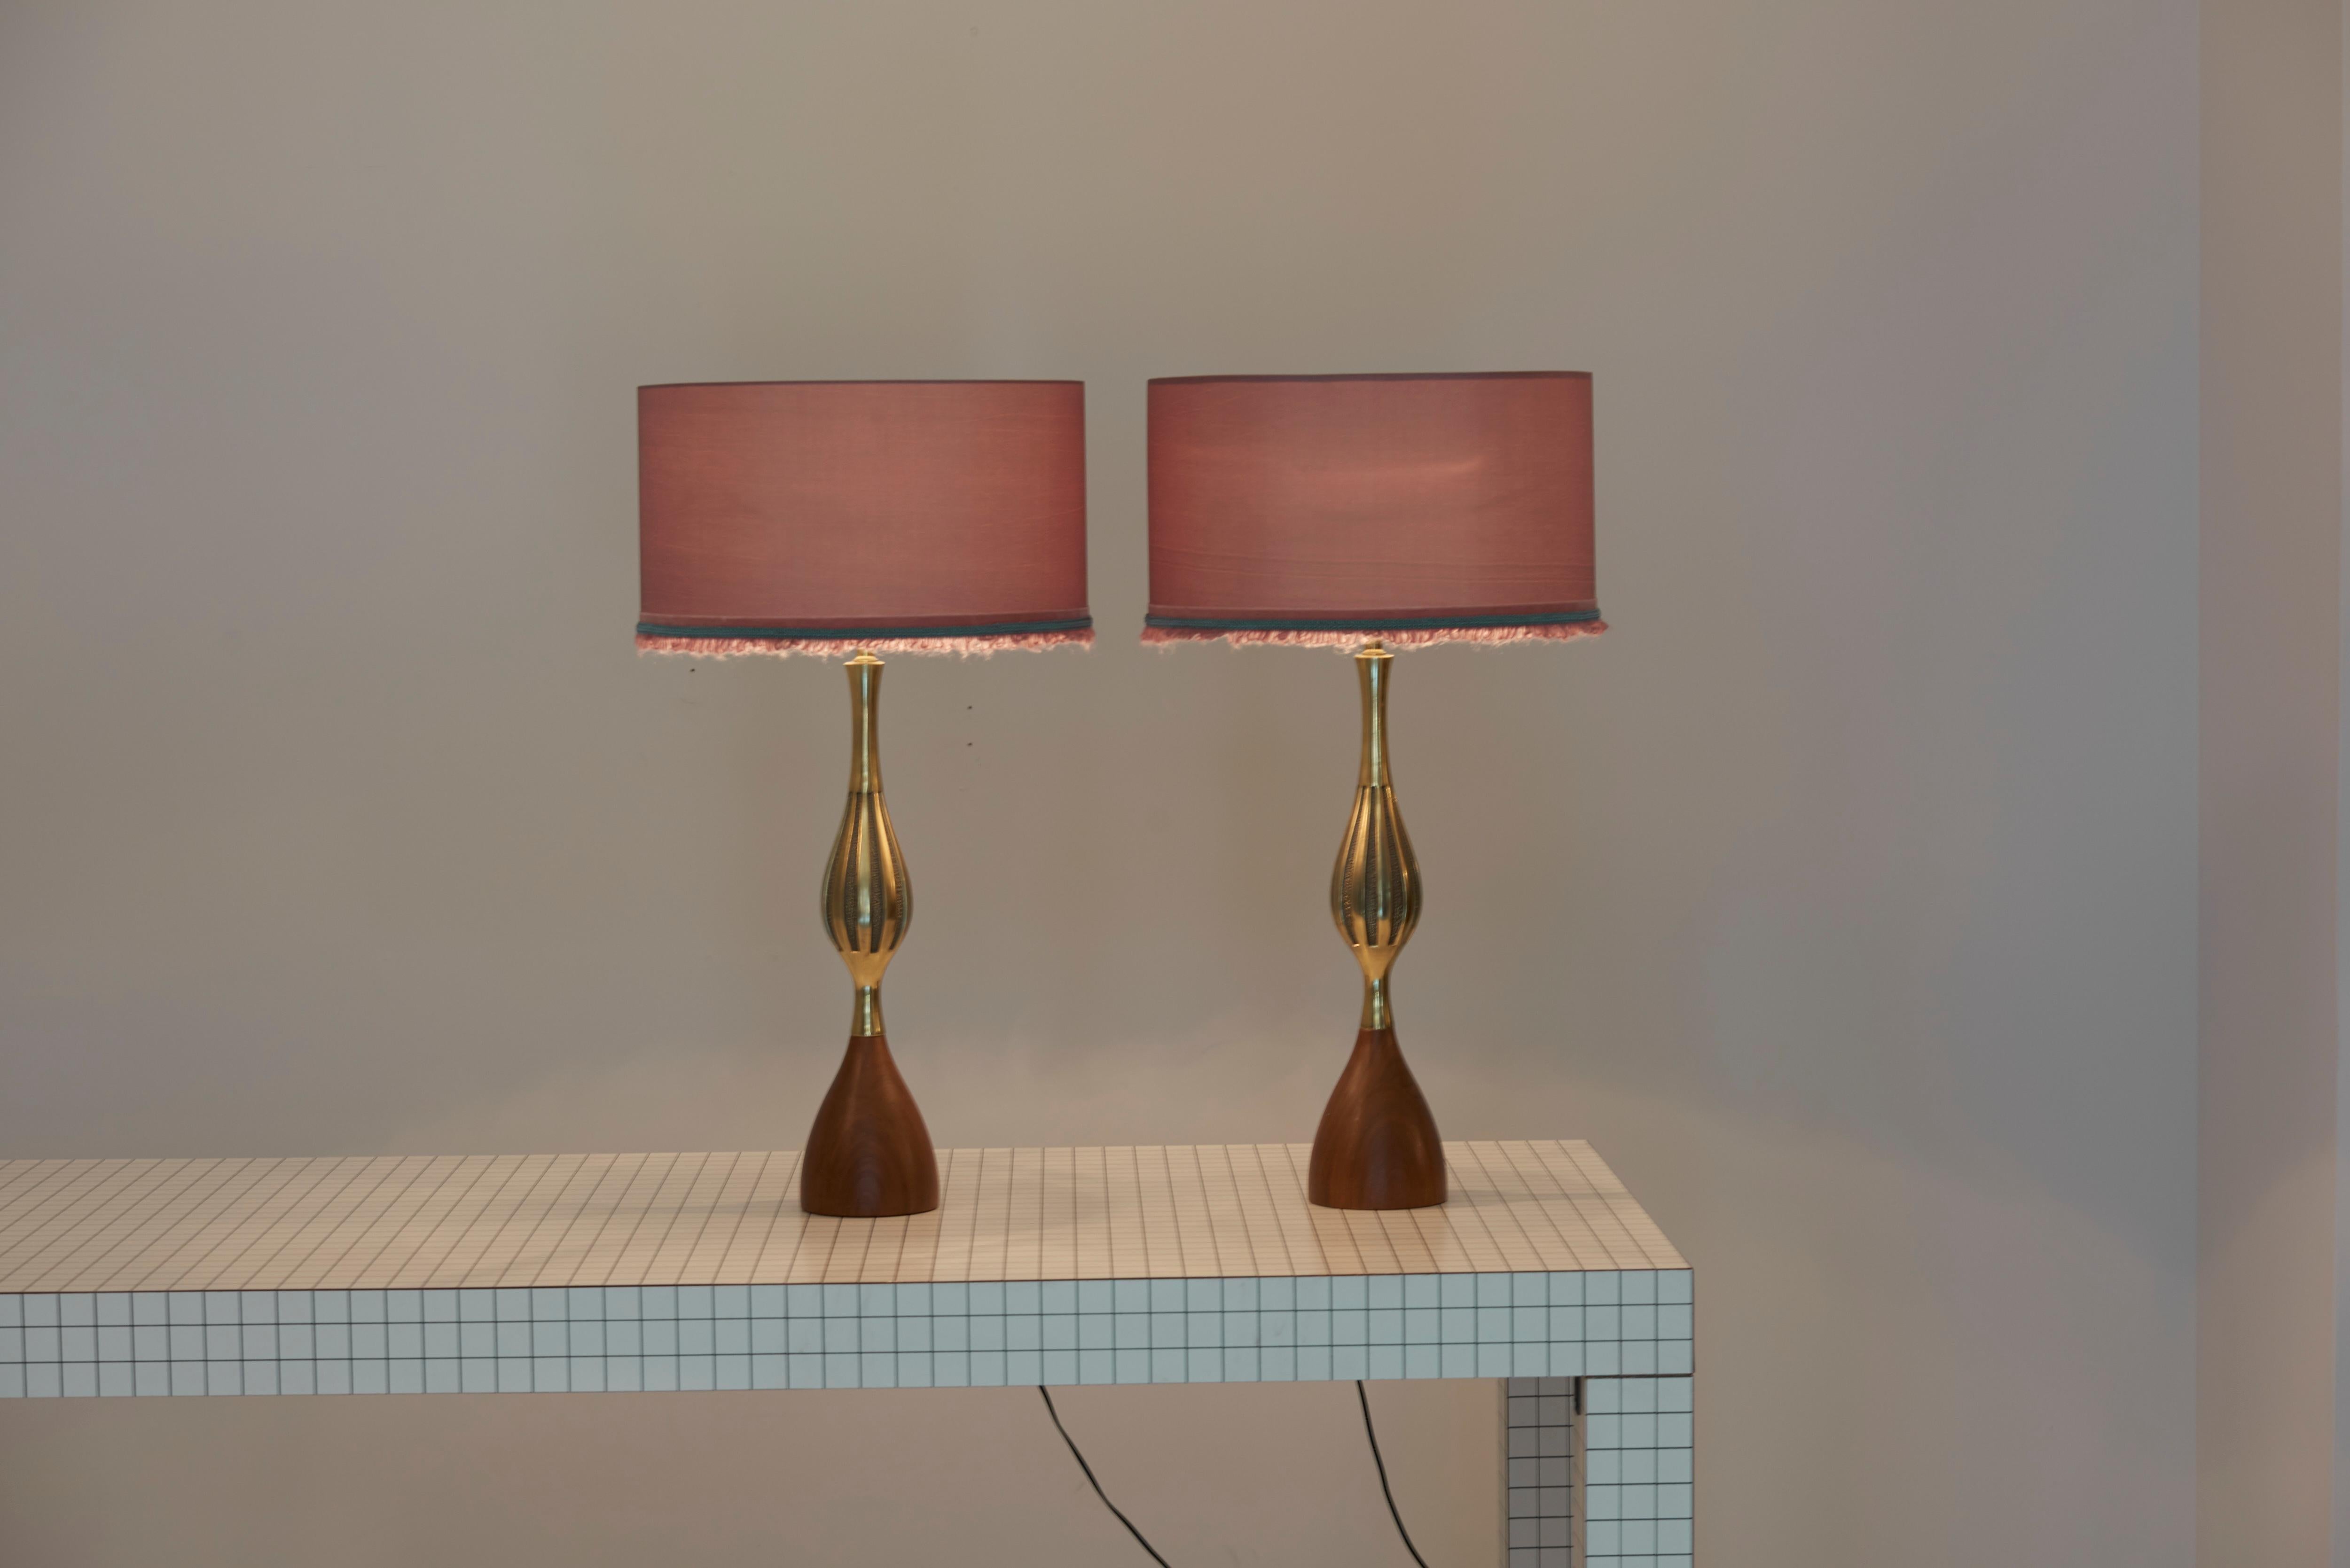 Zwei große Tischlampen aus Messing und Walnuss, entworfen von Tony Paul und hergestellt von Westwood Lighting.
Einschließlich neuer maßgeschneiderter Lampenschirme.

1 x E27-Fassung / pro Stück.

Bitte beachten Sie: Die Leuchte sollte fachgerecht